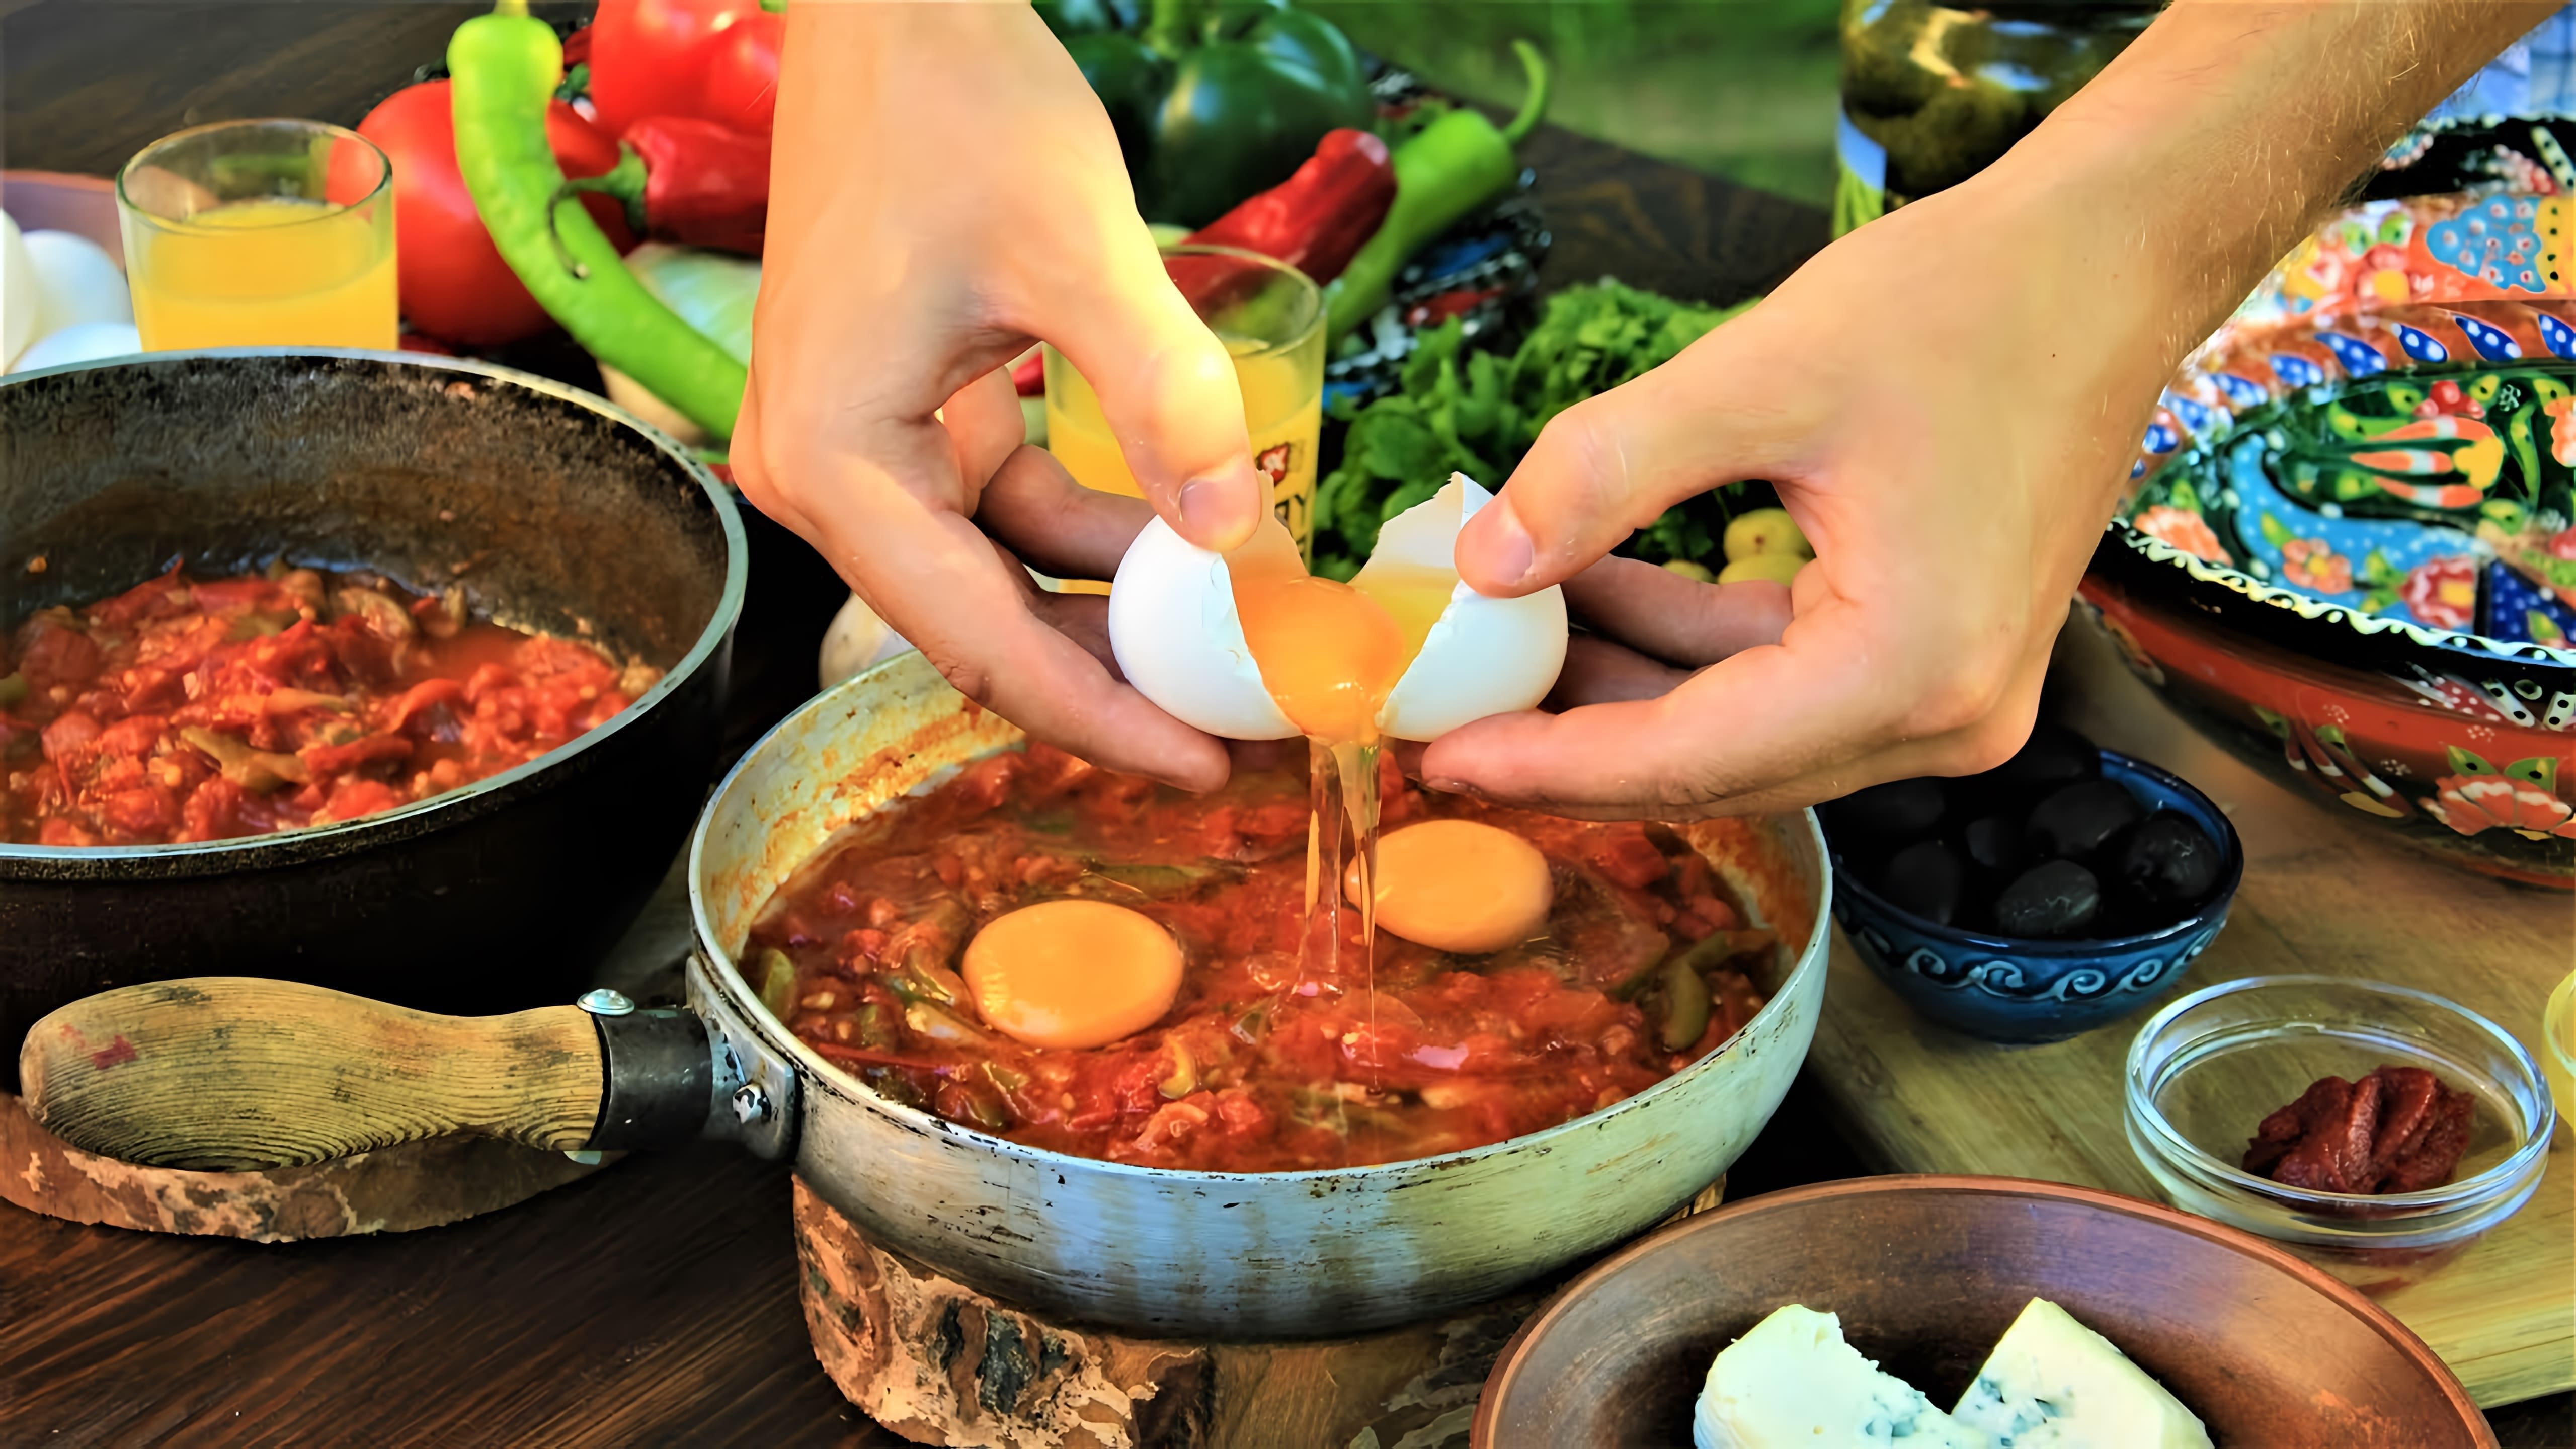 В этом видео демонстрируется процесс приготовления турецкого омлета с помидорами, который называется "Менен"